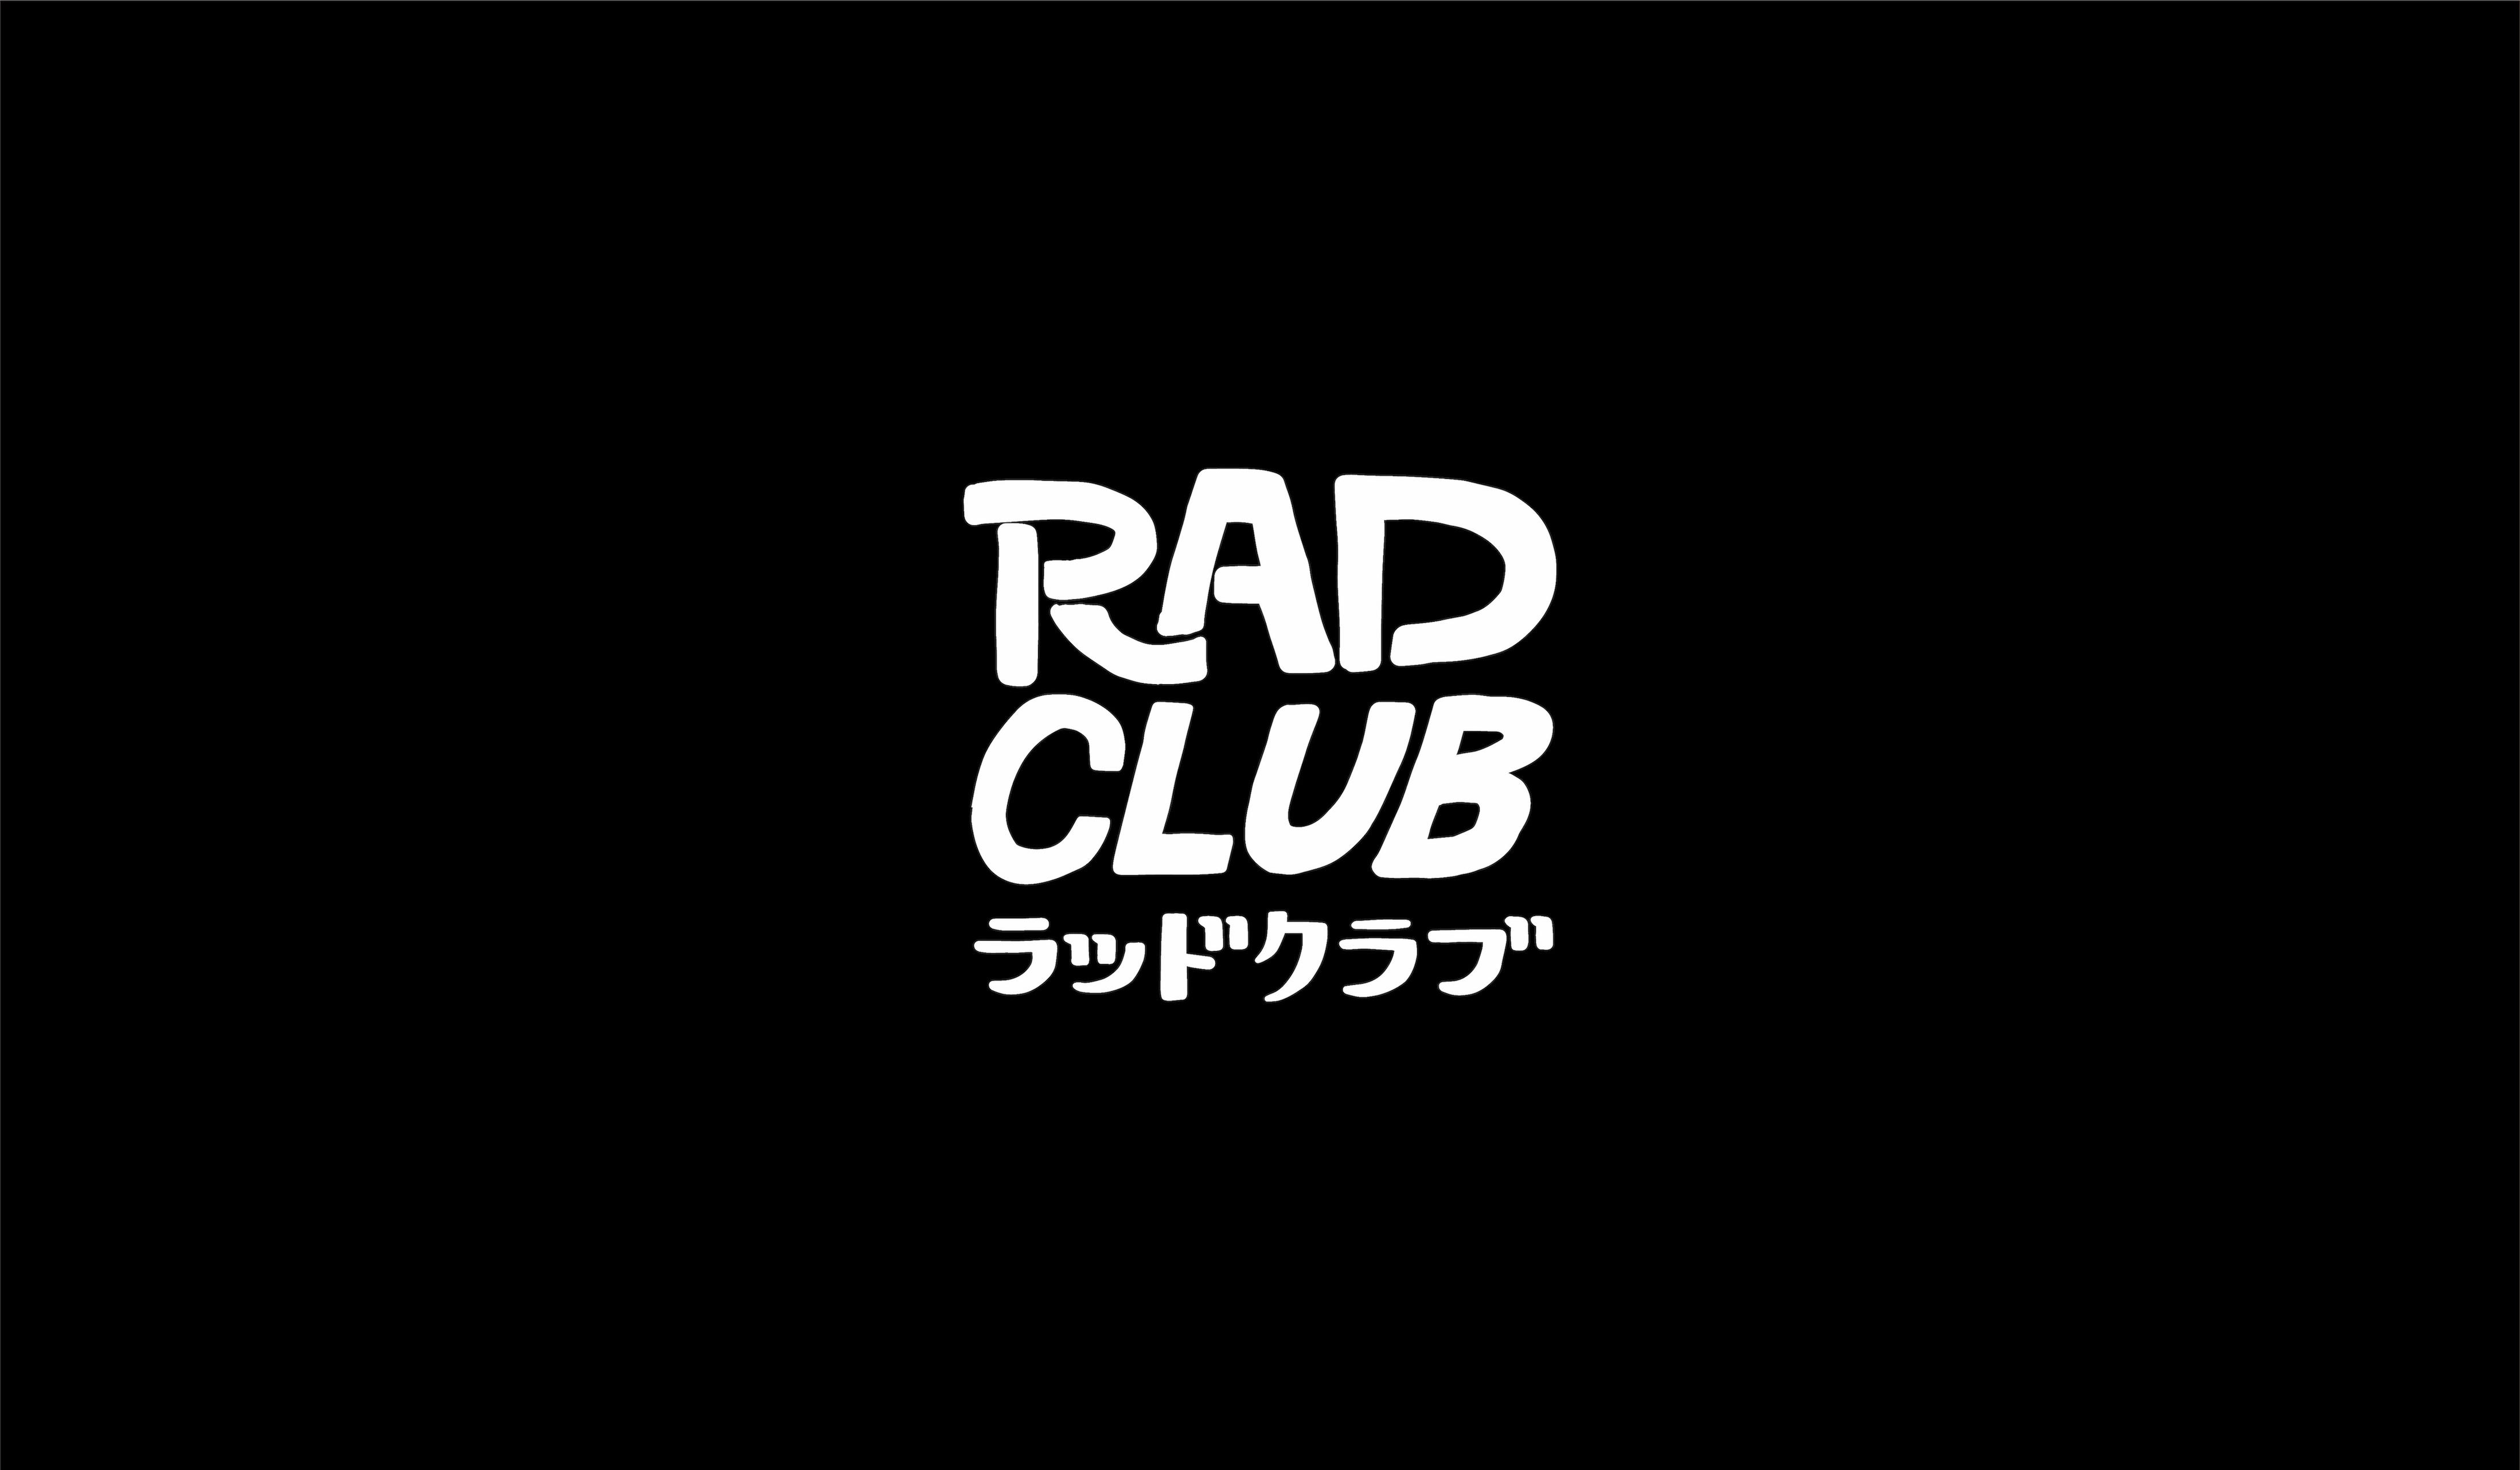 RAD CLUB│RAD CLUB